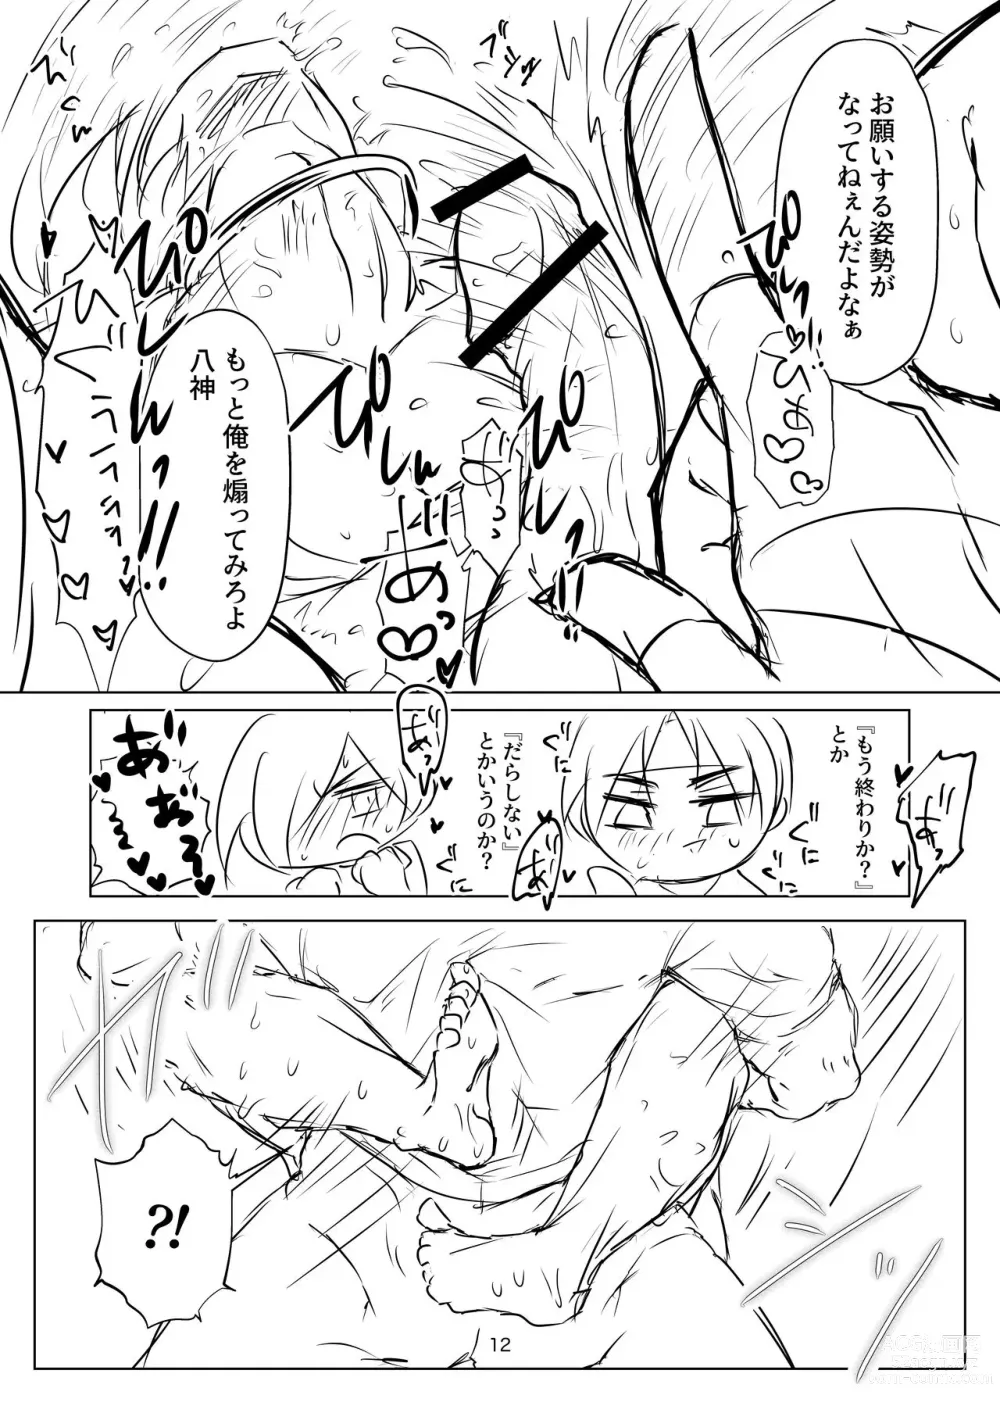 Page 12 of doujinshi R18 Manga EAT ME!